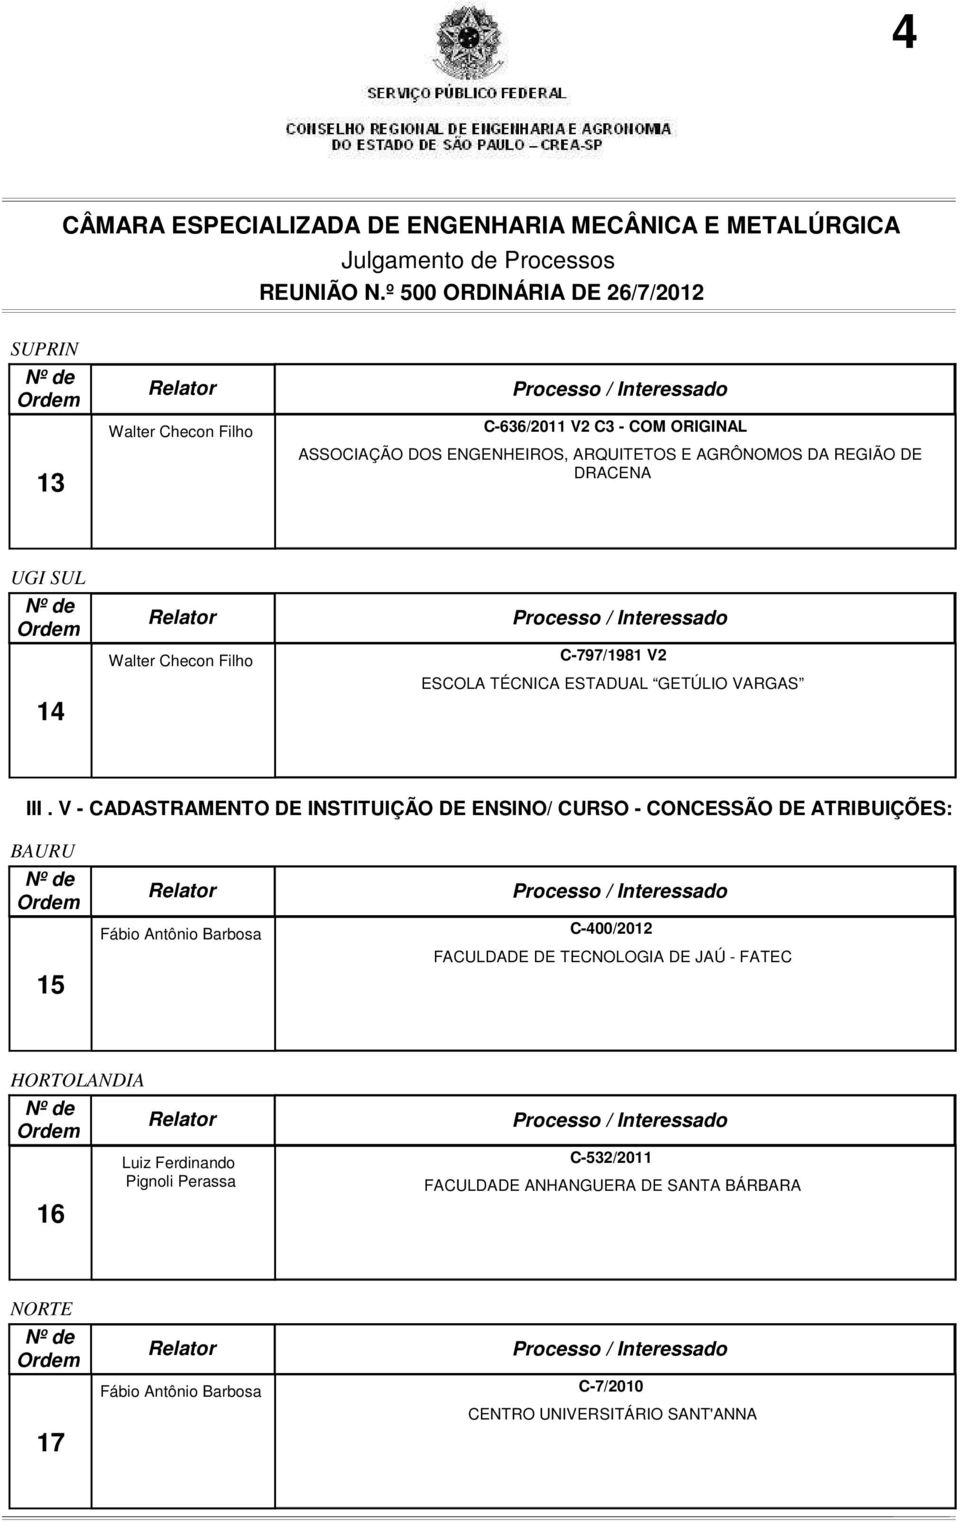 V - CADASTRAMENTO DE INSTITUIÇÃO DE ENSINO/ CURSO - CONCESSÃO DE ATRIBUIÇÕES: BAURU 15 Fábio Antônio Barbosa C-400/2012